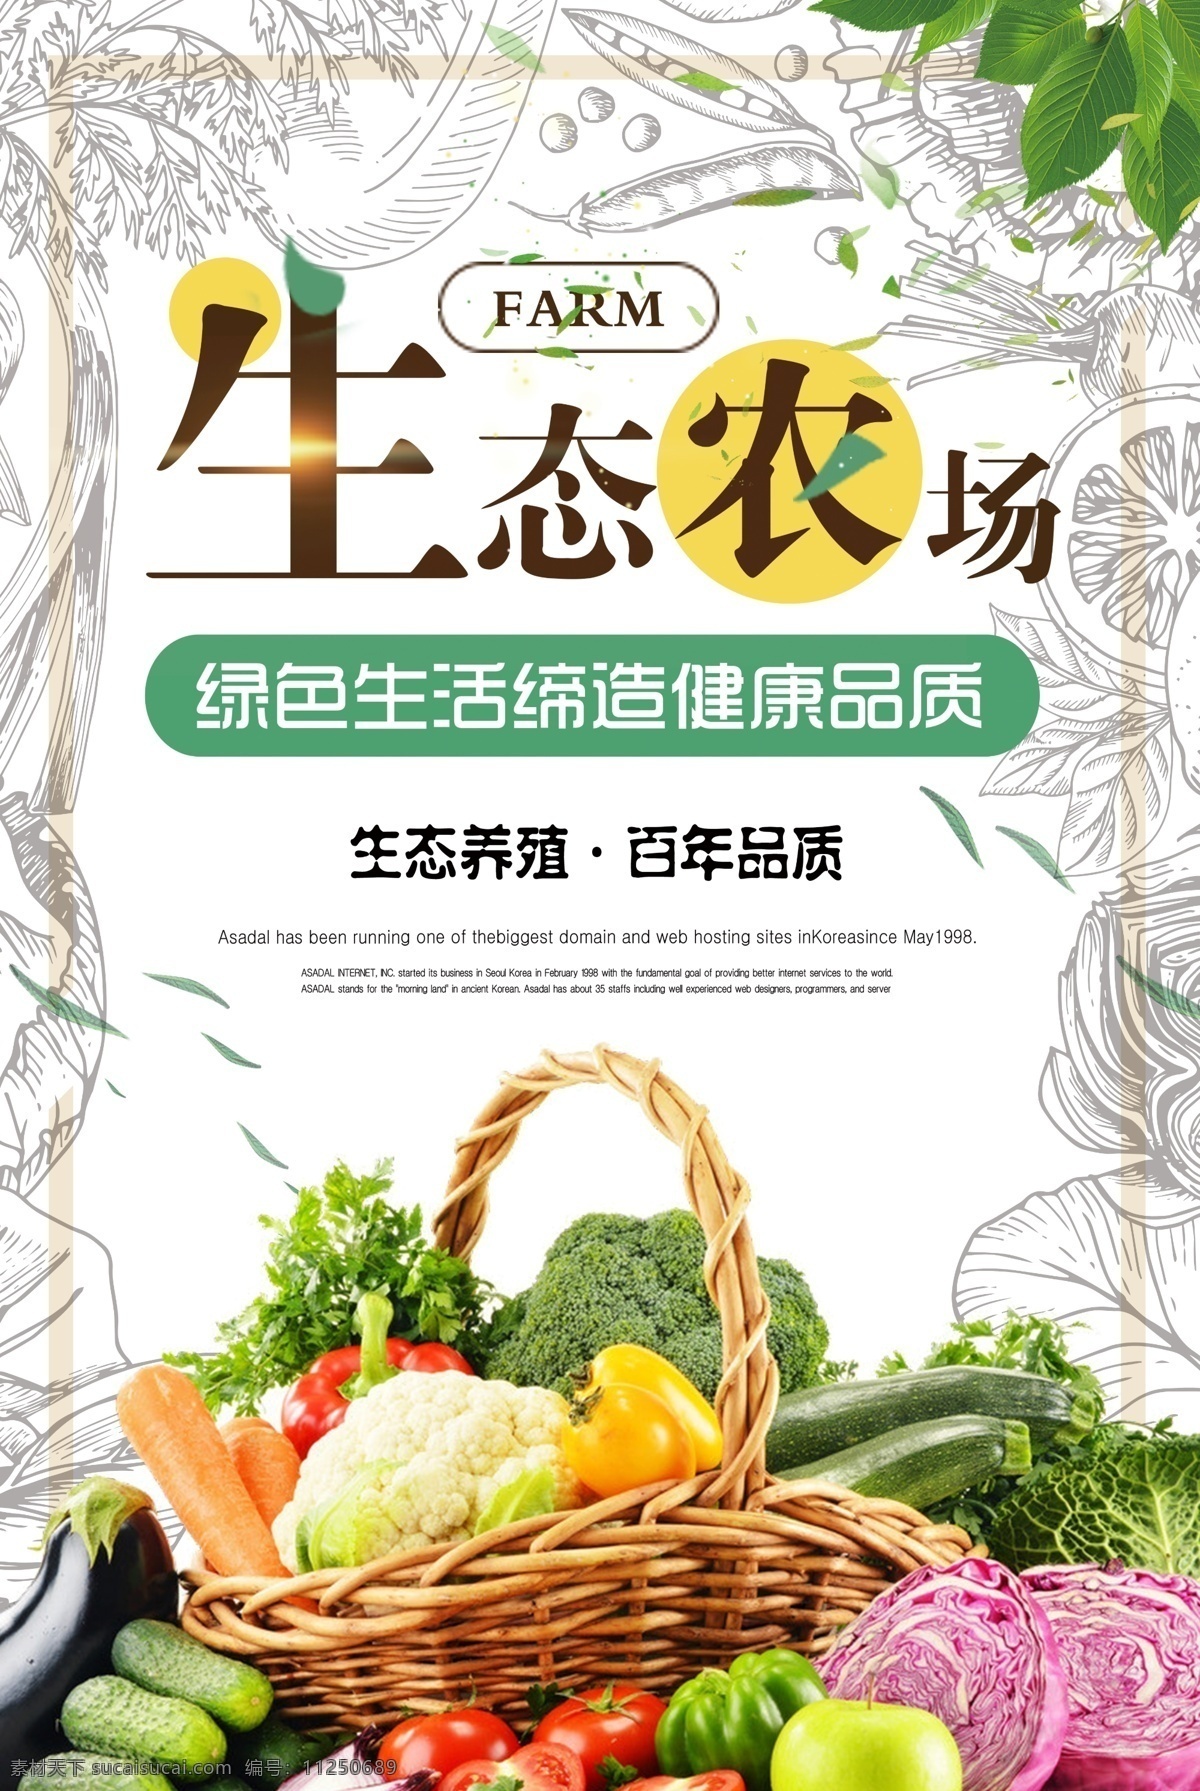 蔬菜超市海报 蔬菜 超市 有机蔬菜 绿色蔬菜 绿色营养 超市促销 促销 生鲜超市 果蔬 果蔬超市 菜市场 新鲜蔬菜